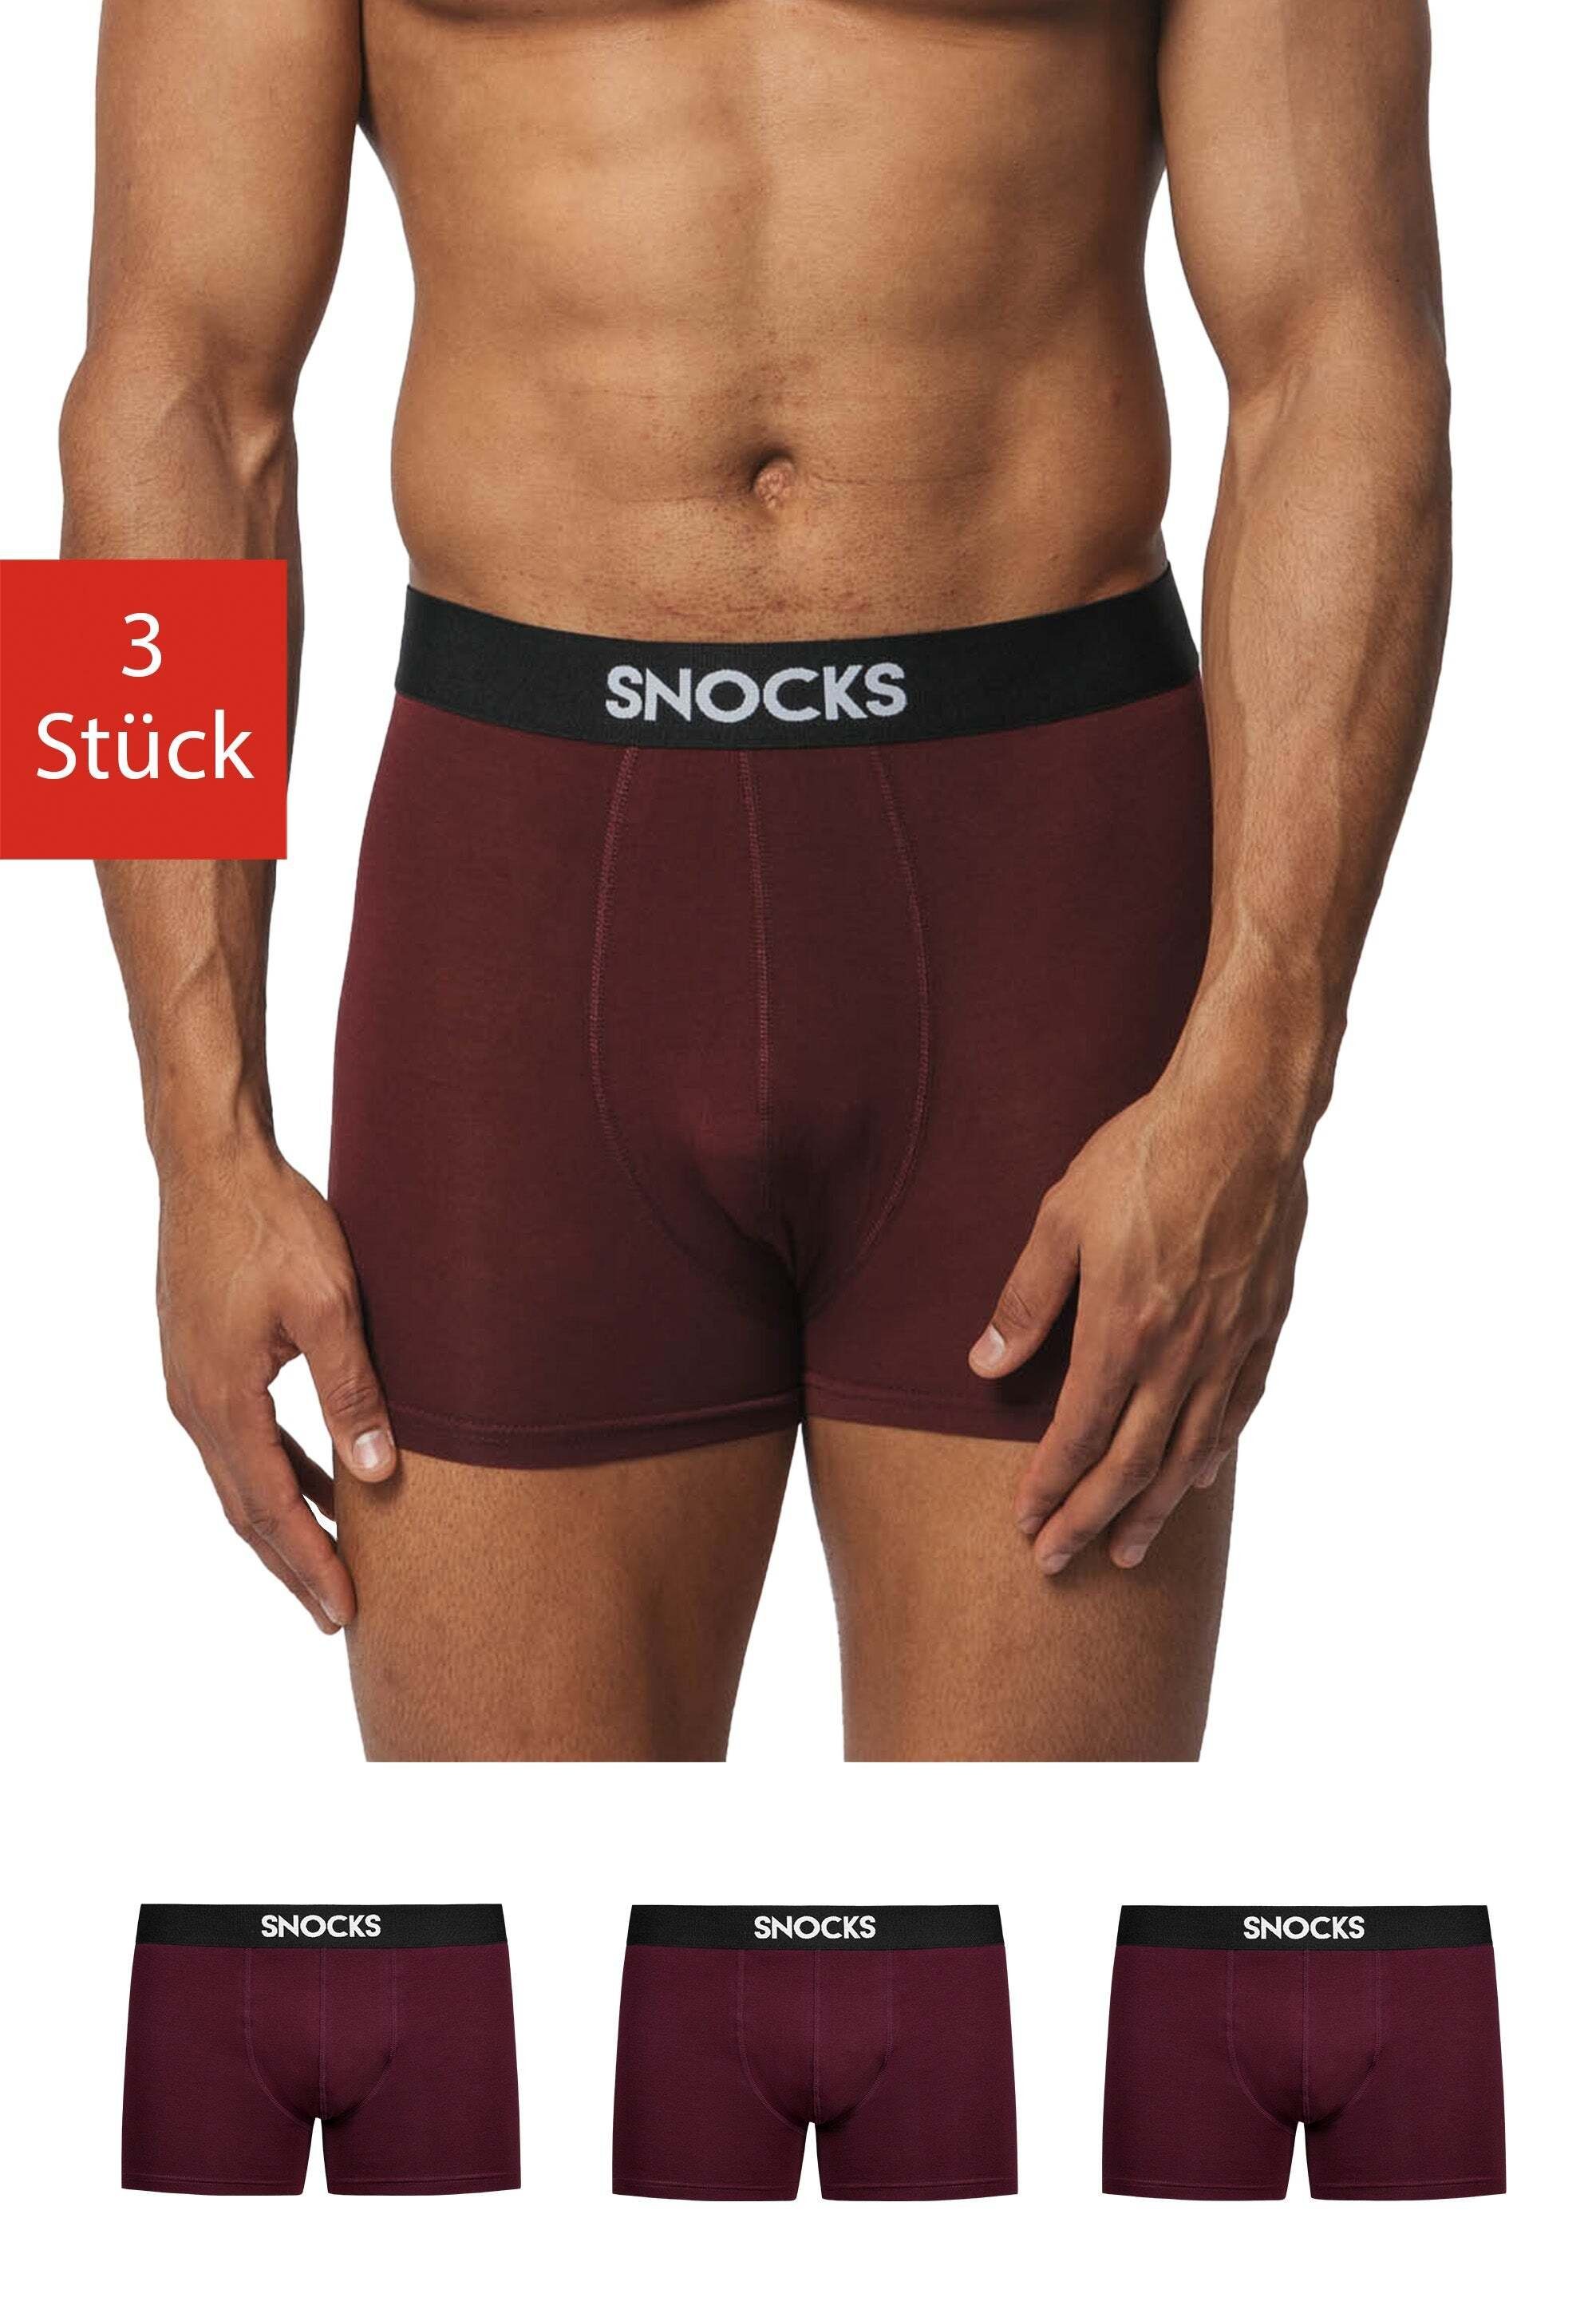 Großer Verkauf neuer Produkte durchgeführt SNOCKS Boxershorts zu Modal, besonders tragen weich aus 95% Lenzing Rot und (3-St) angenehm